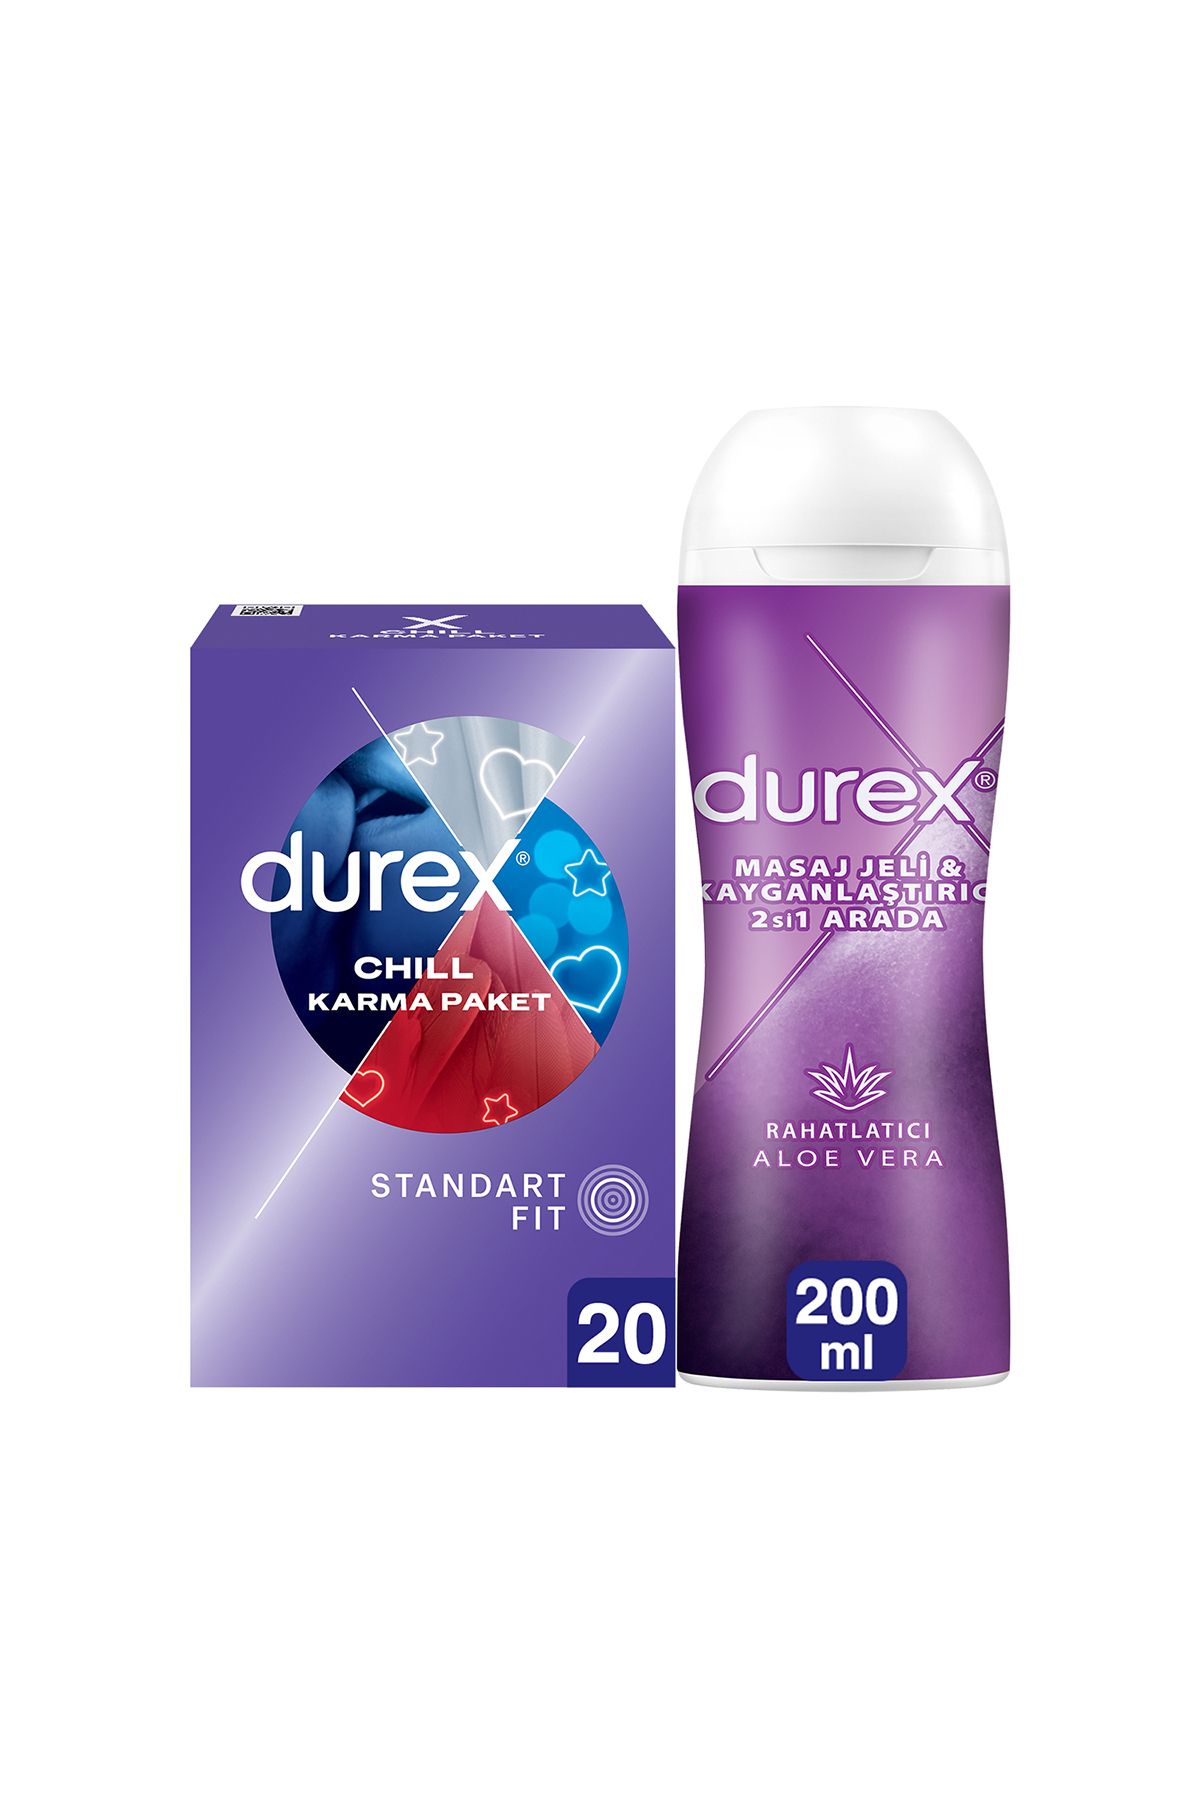 Durex Chill Karma Prezervatif 20’li + Aloe Vera 2si 1 Arada Kayganlaştırıcı & Masaj Jeli 200 Ml